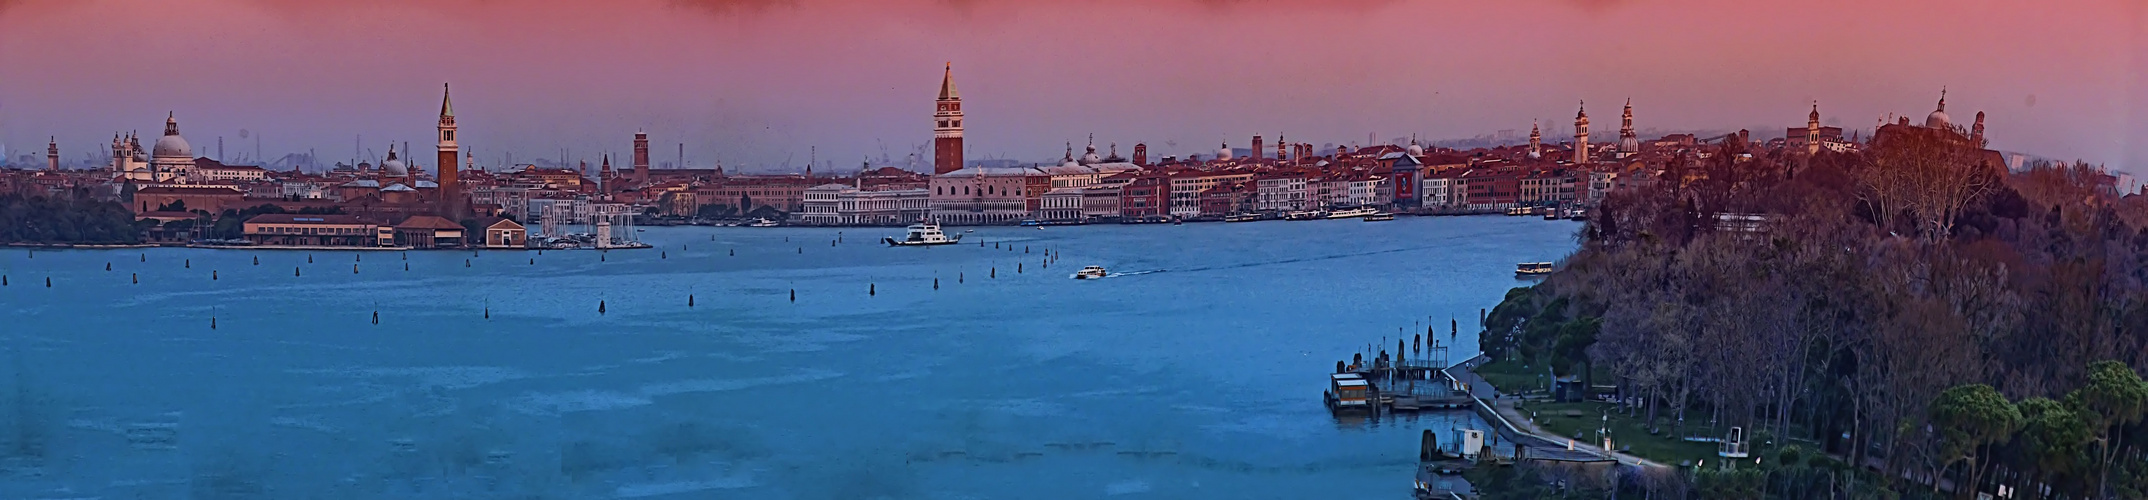 Impressions of Venezia -Motiv vom Weltenbummler